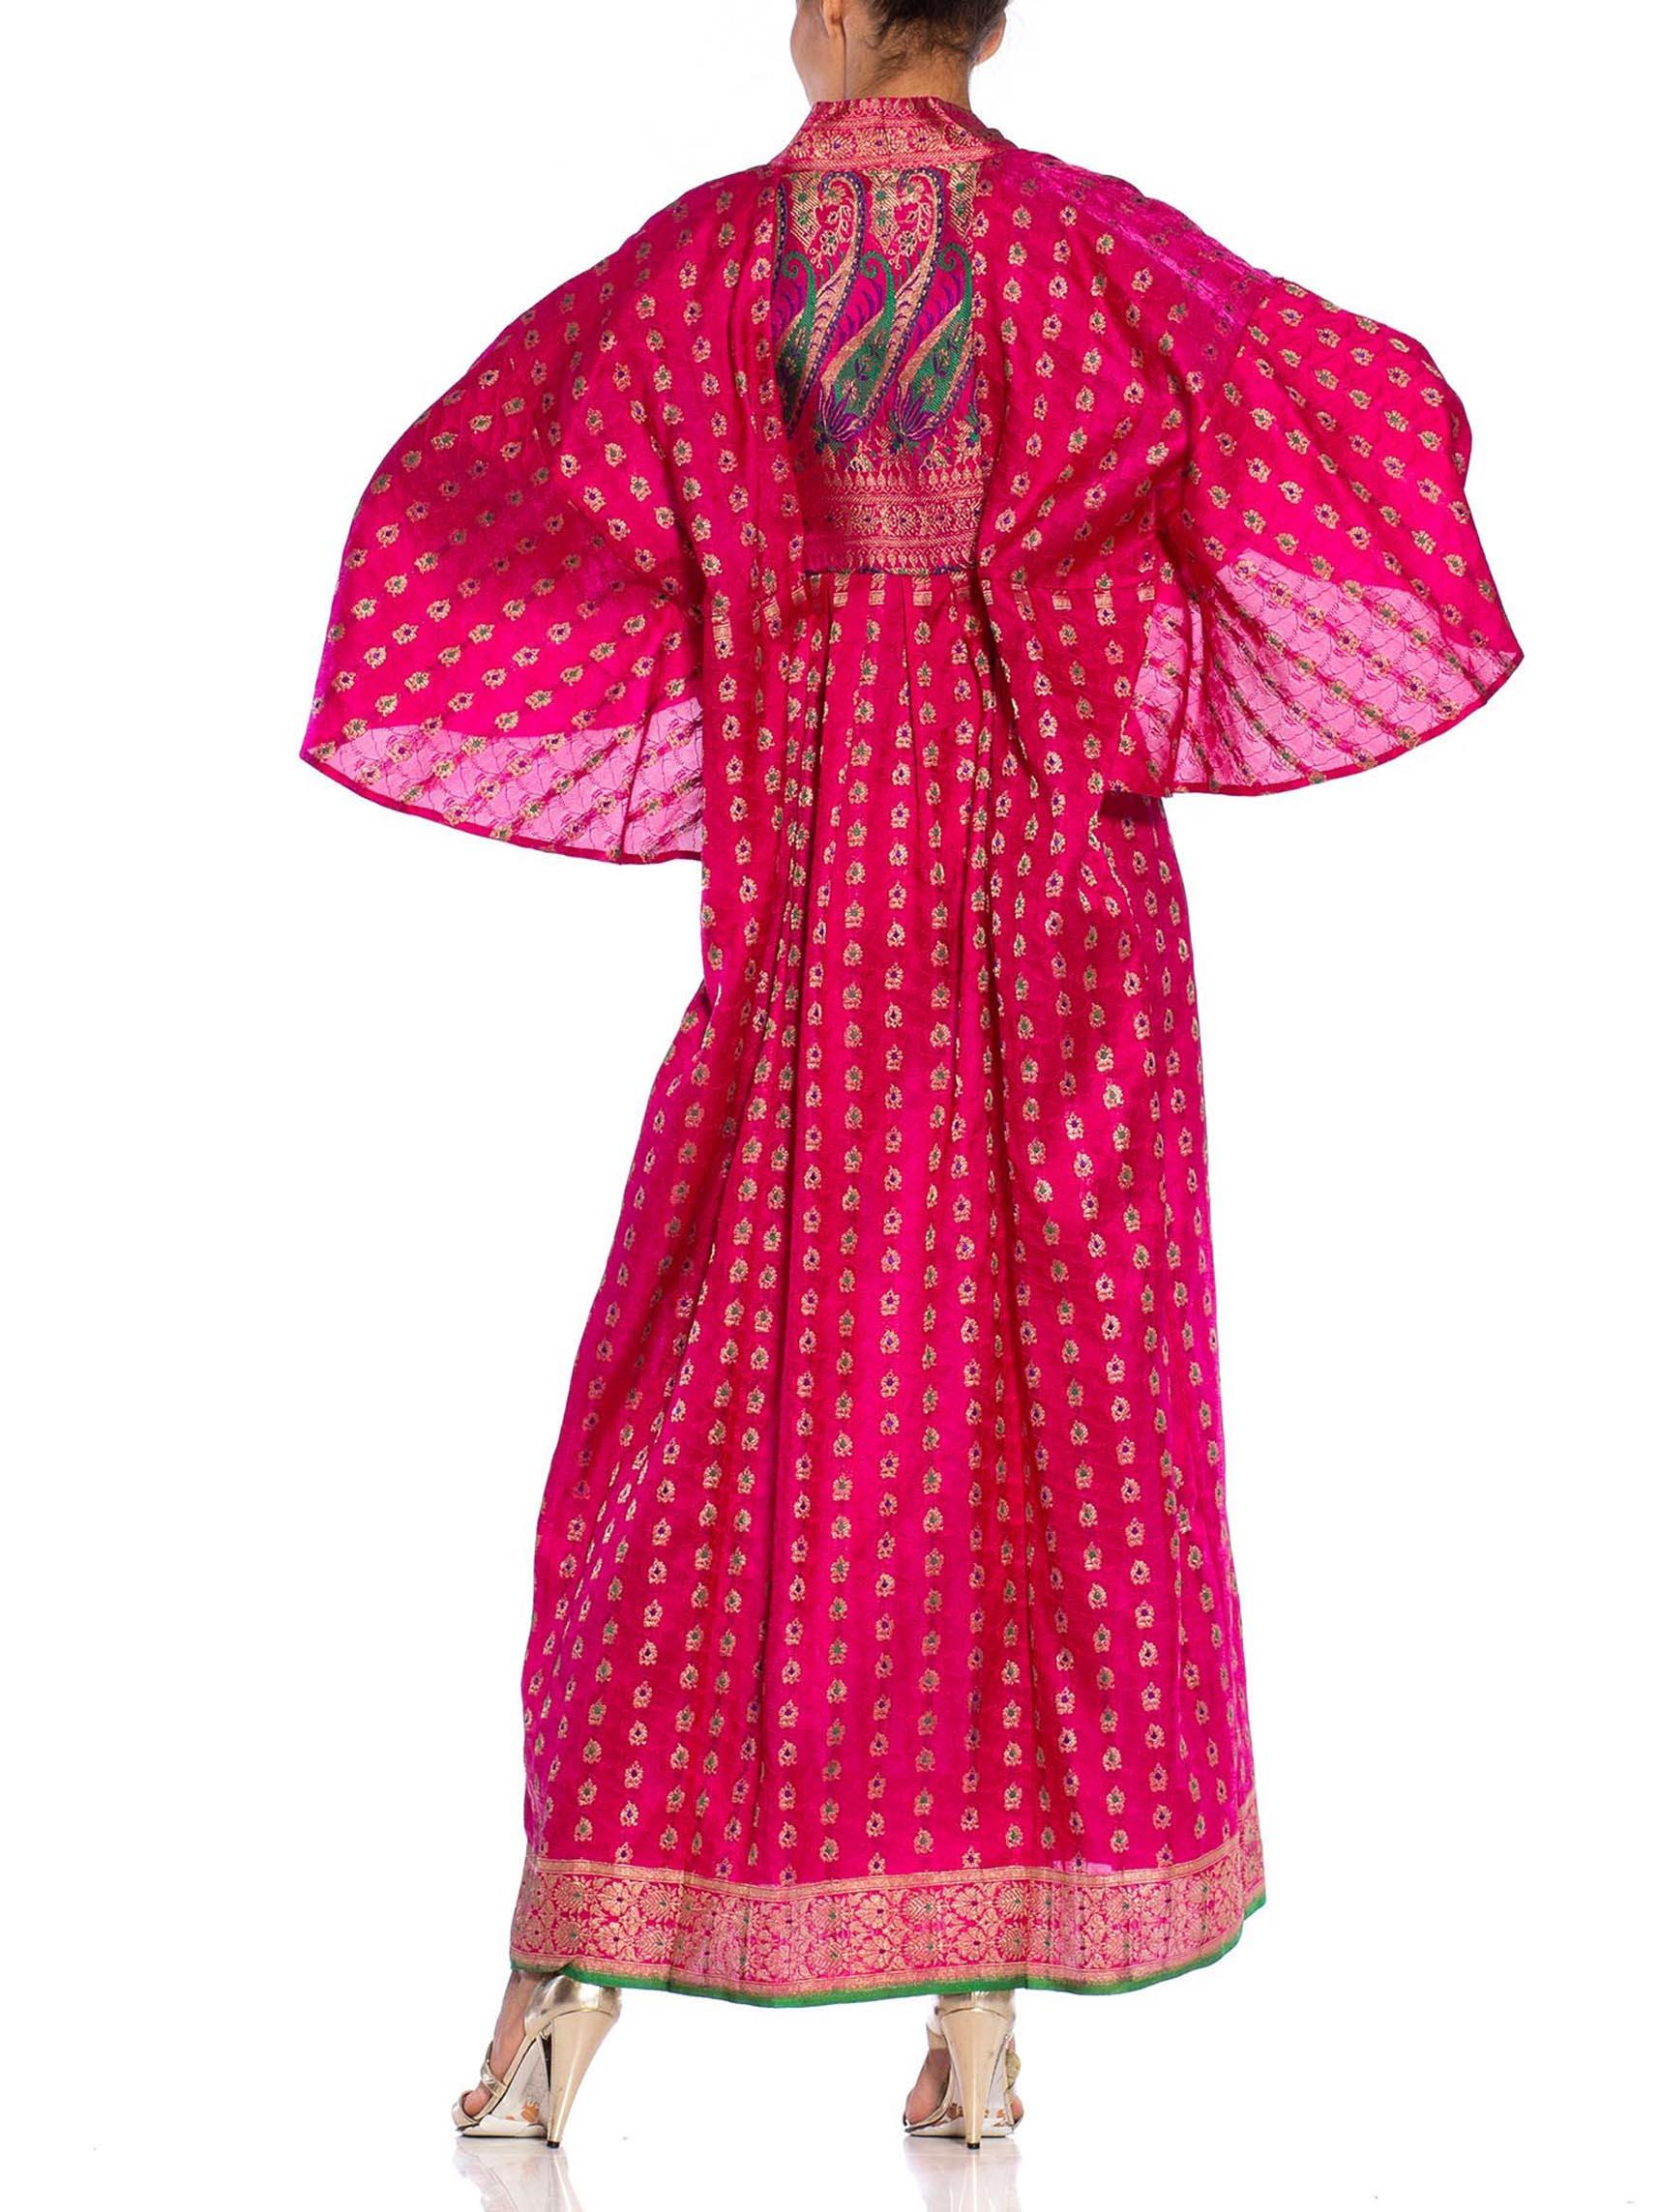 MORPHEW COLLECTION Pink Metallic Silk Kaftan Made From Vintage Saris 3